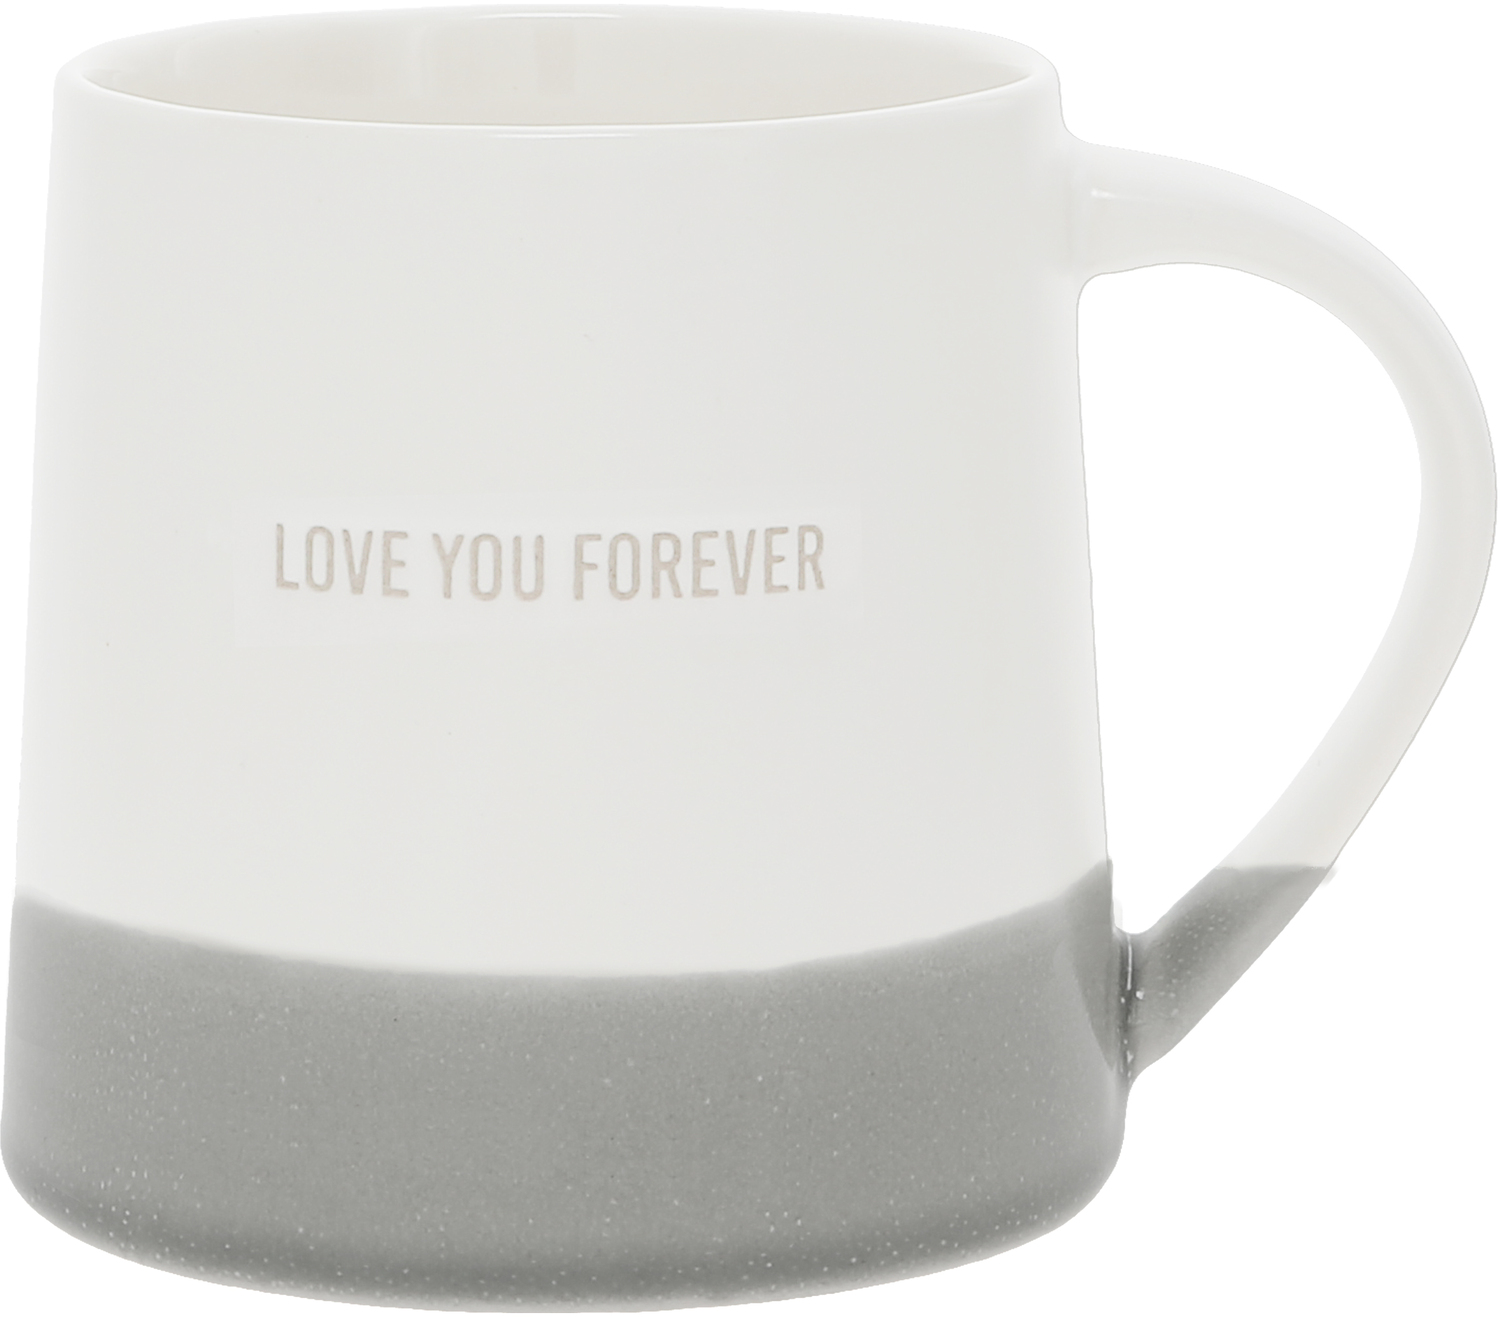 Love You Forever by Love You - Love You Forever - 17 oz Mug